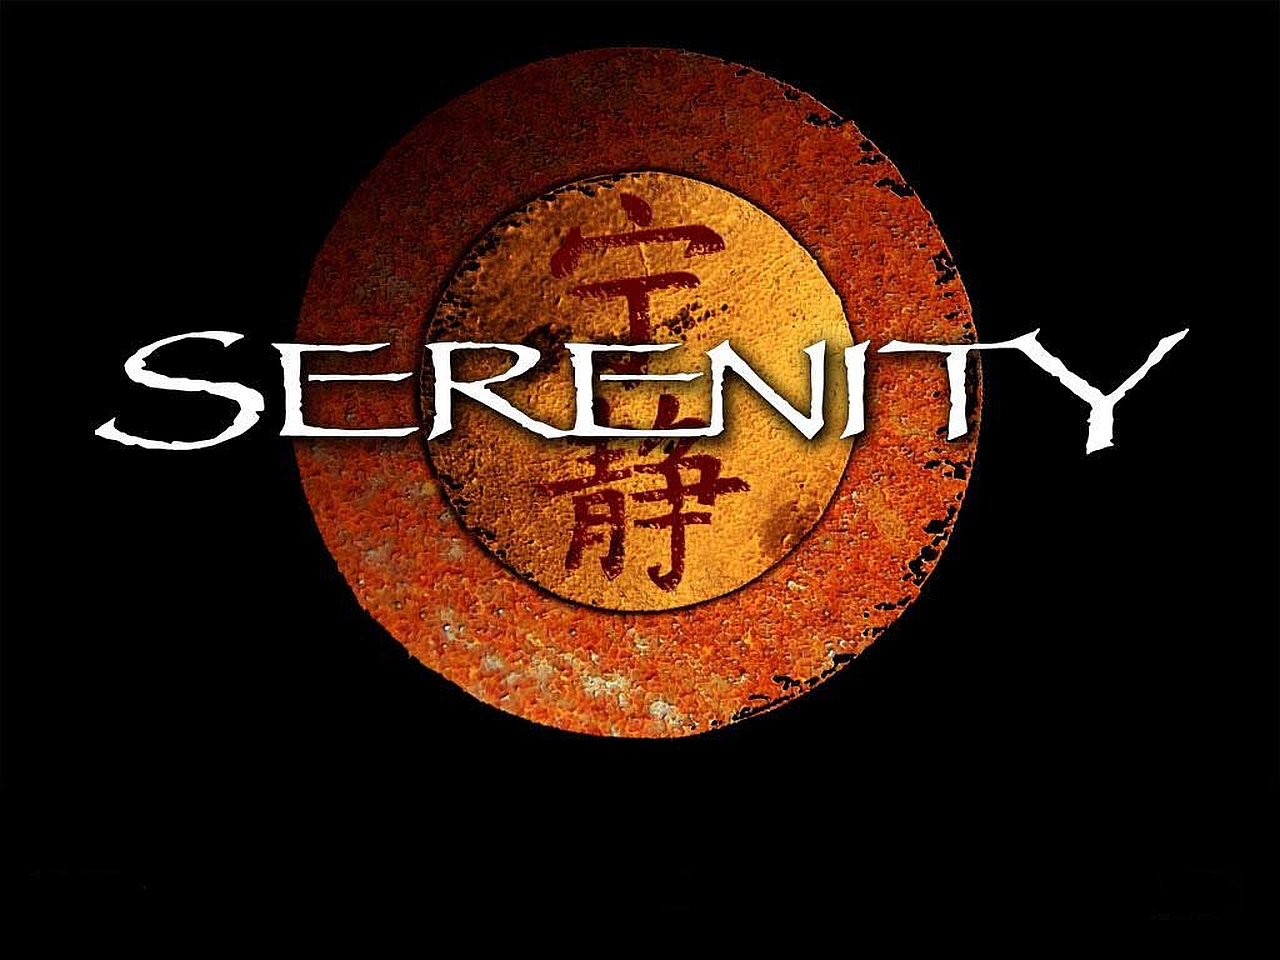 Descarga gratuita de fondo de pantalla para móvil de Películas, Serenidad (2005).